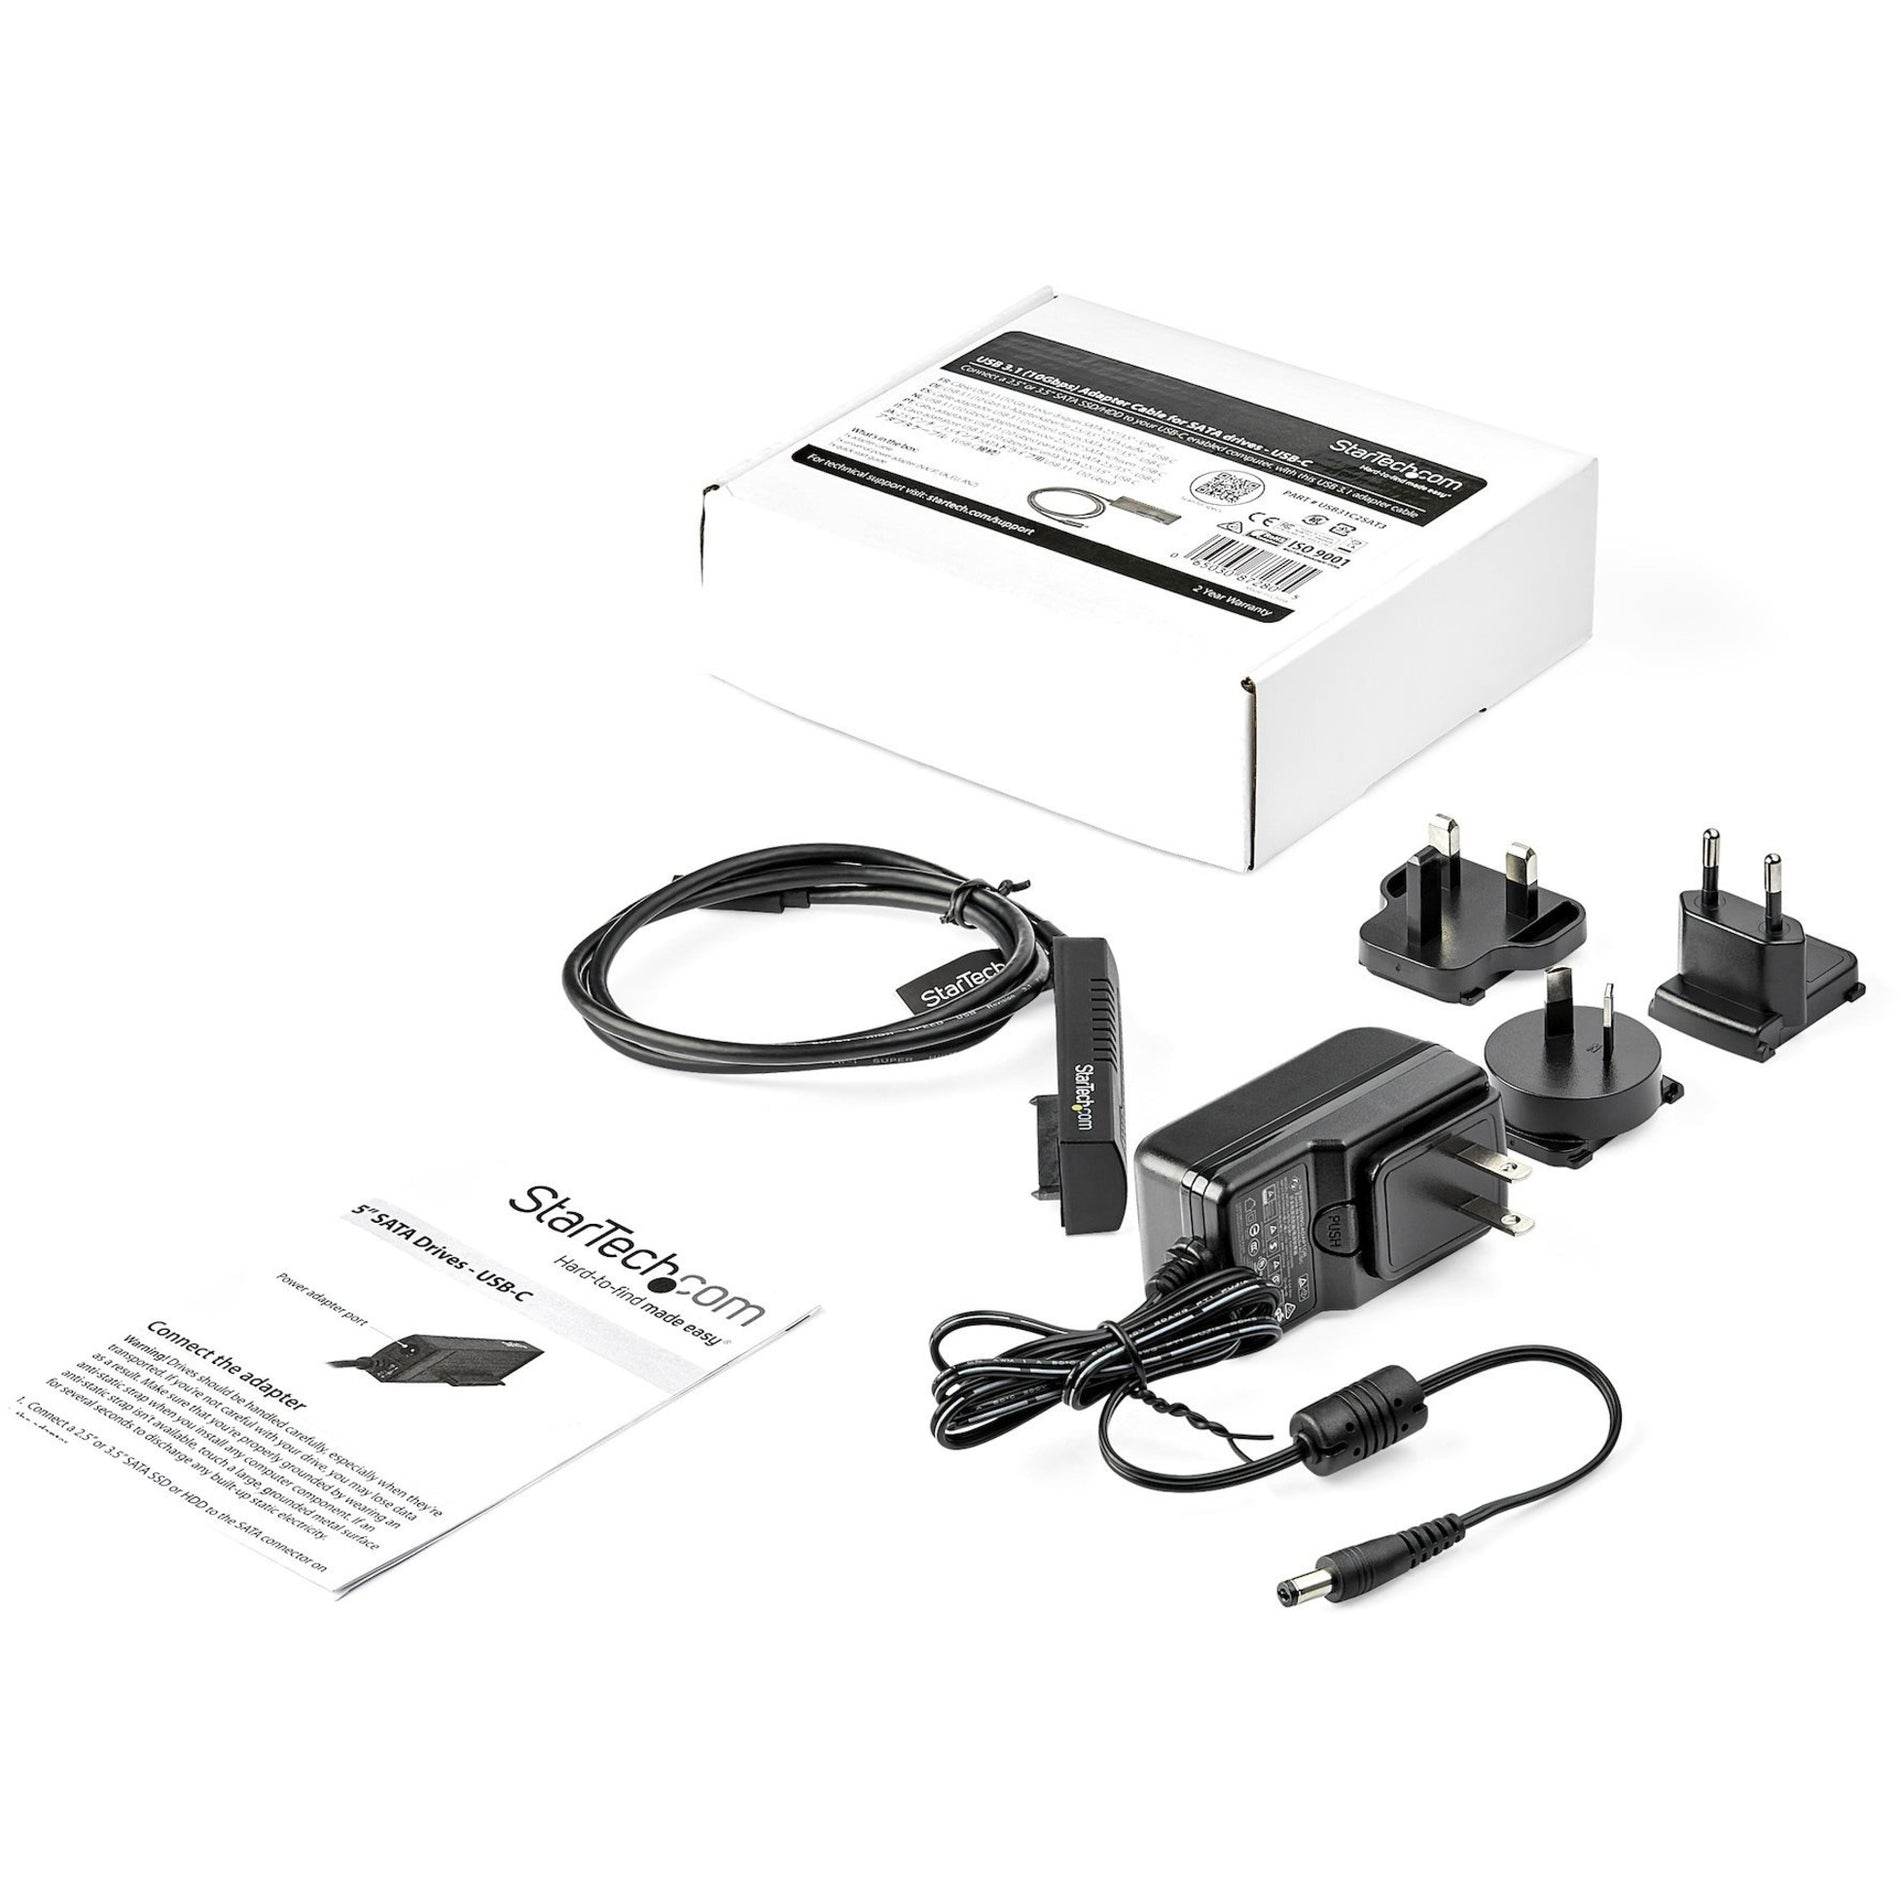 星美科技。com USB31C2SAT3 USB C to SATA 适配器电缆，用于 2.5"/3.5" 固态硬盘/硬盘驱动器，USB 3.1 (10Gbps) 硬盘适配器电缆。品牌名称翻译：星美科技。